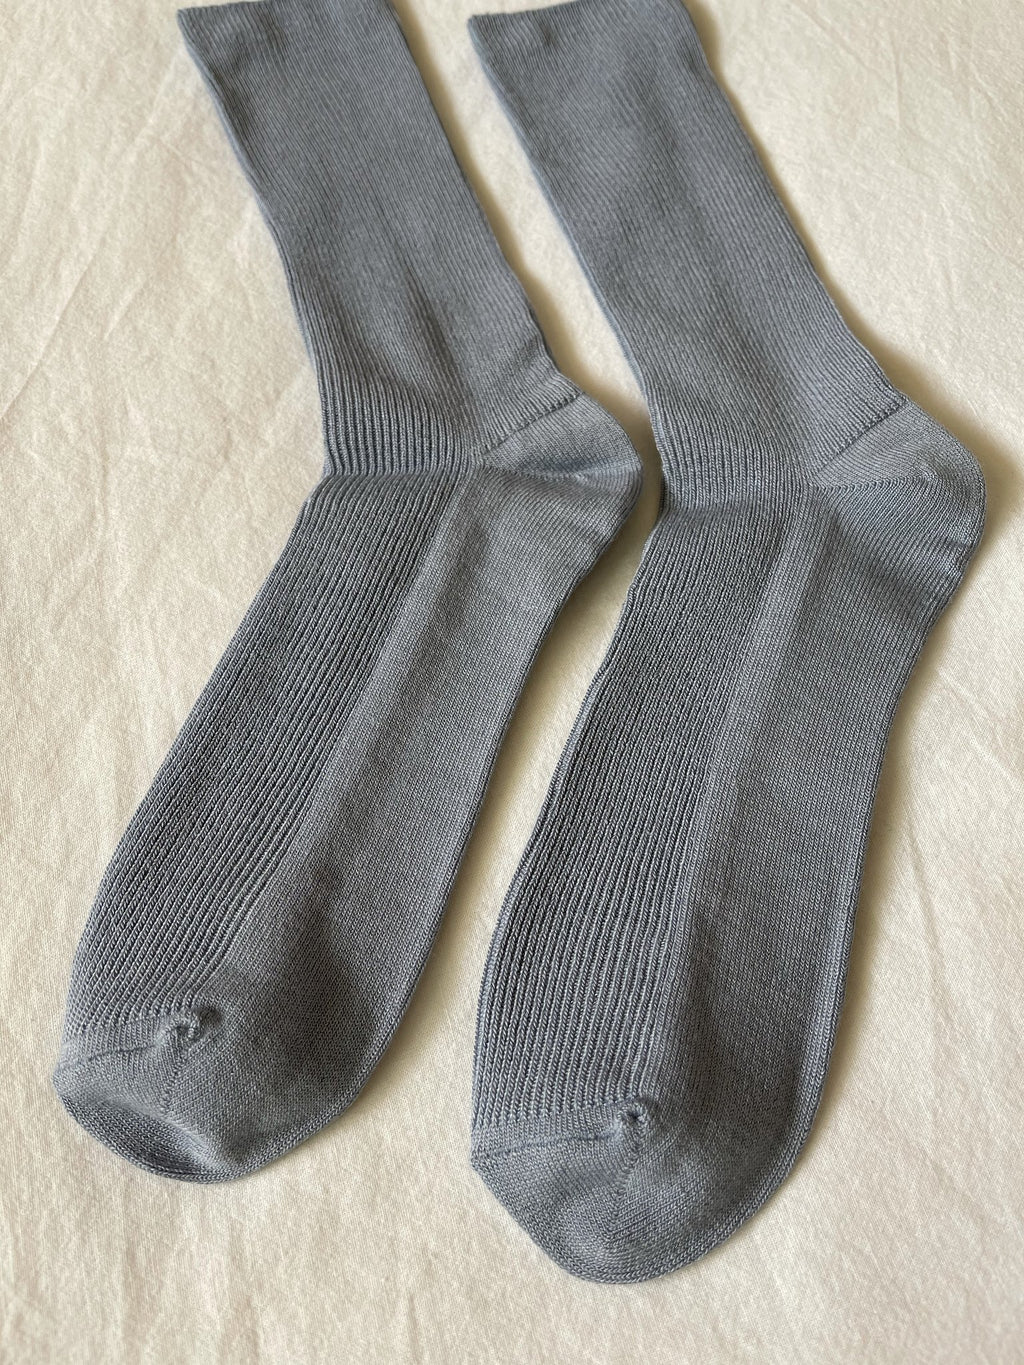 Trouser Socks - Blue Bell